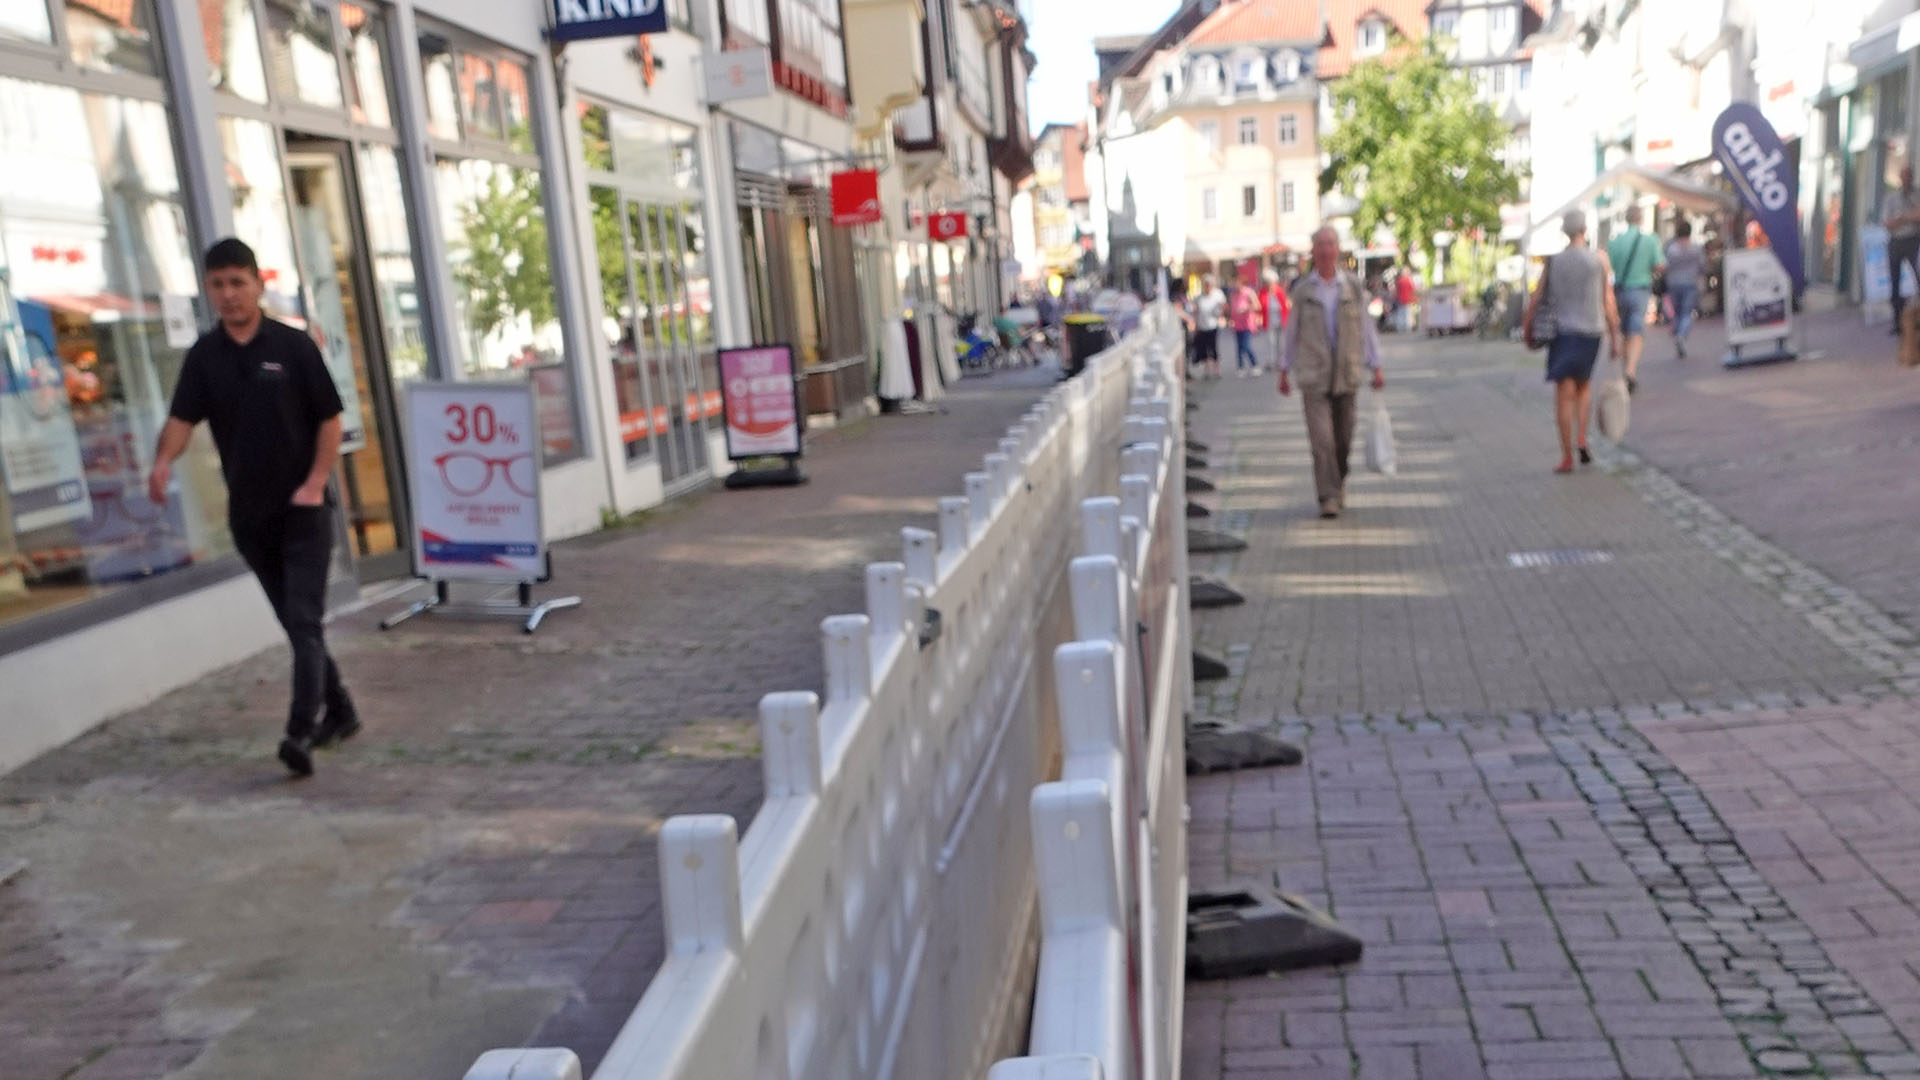 Bild vergrößern: In der Fußgängerzone stehen Absperrungen, in deren Mitte ein Kanal ausgebaggert werden soll